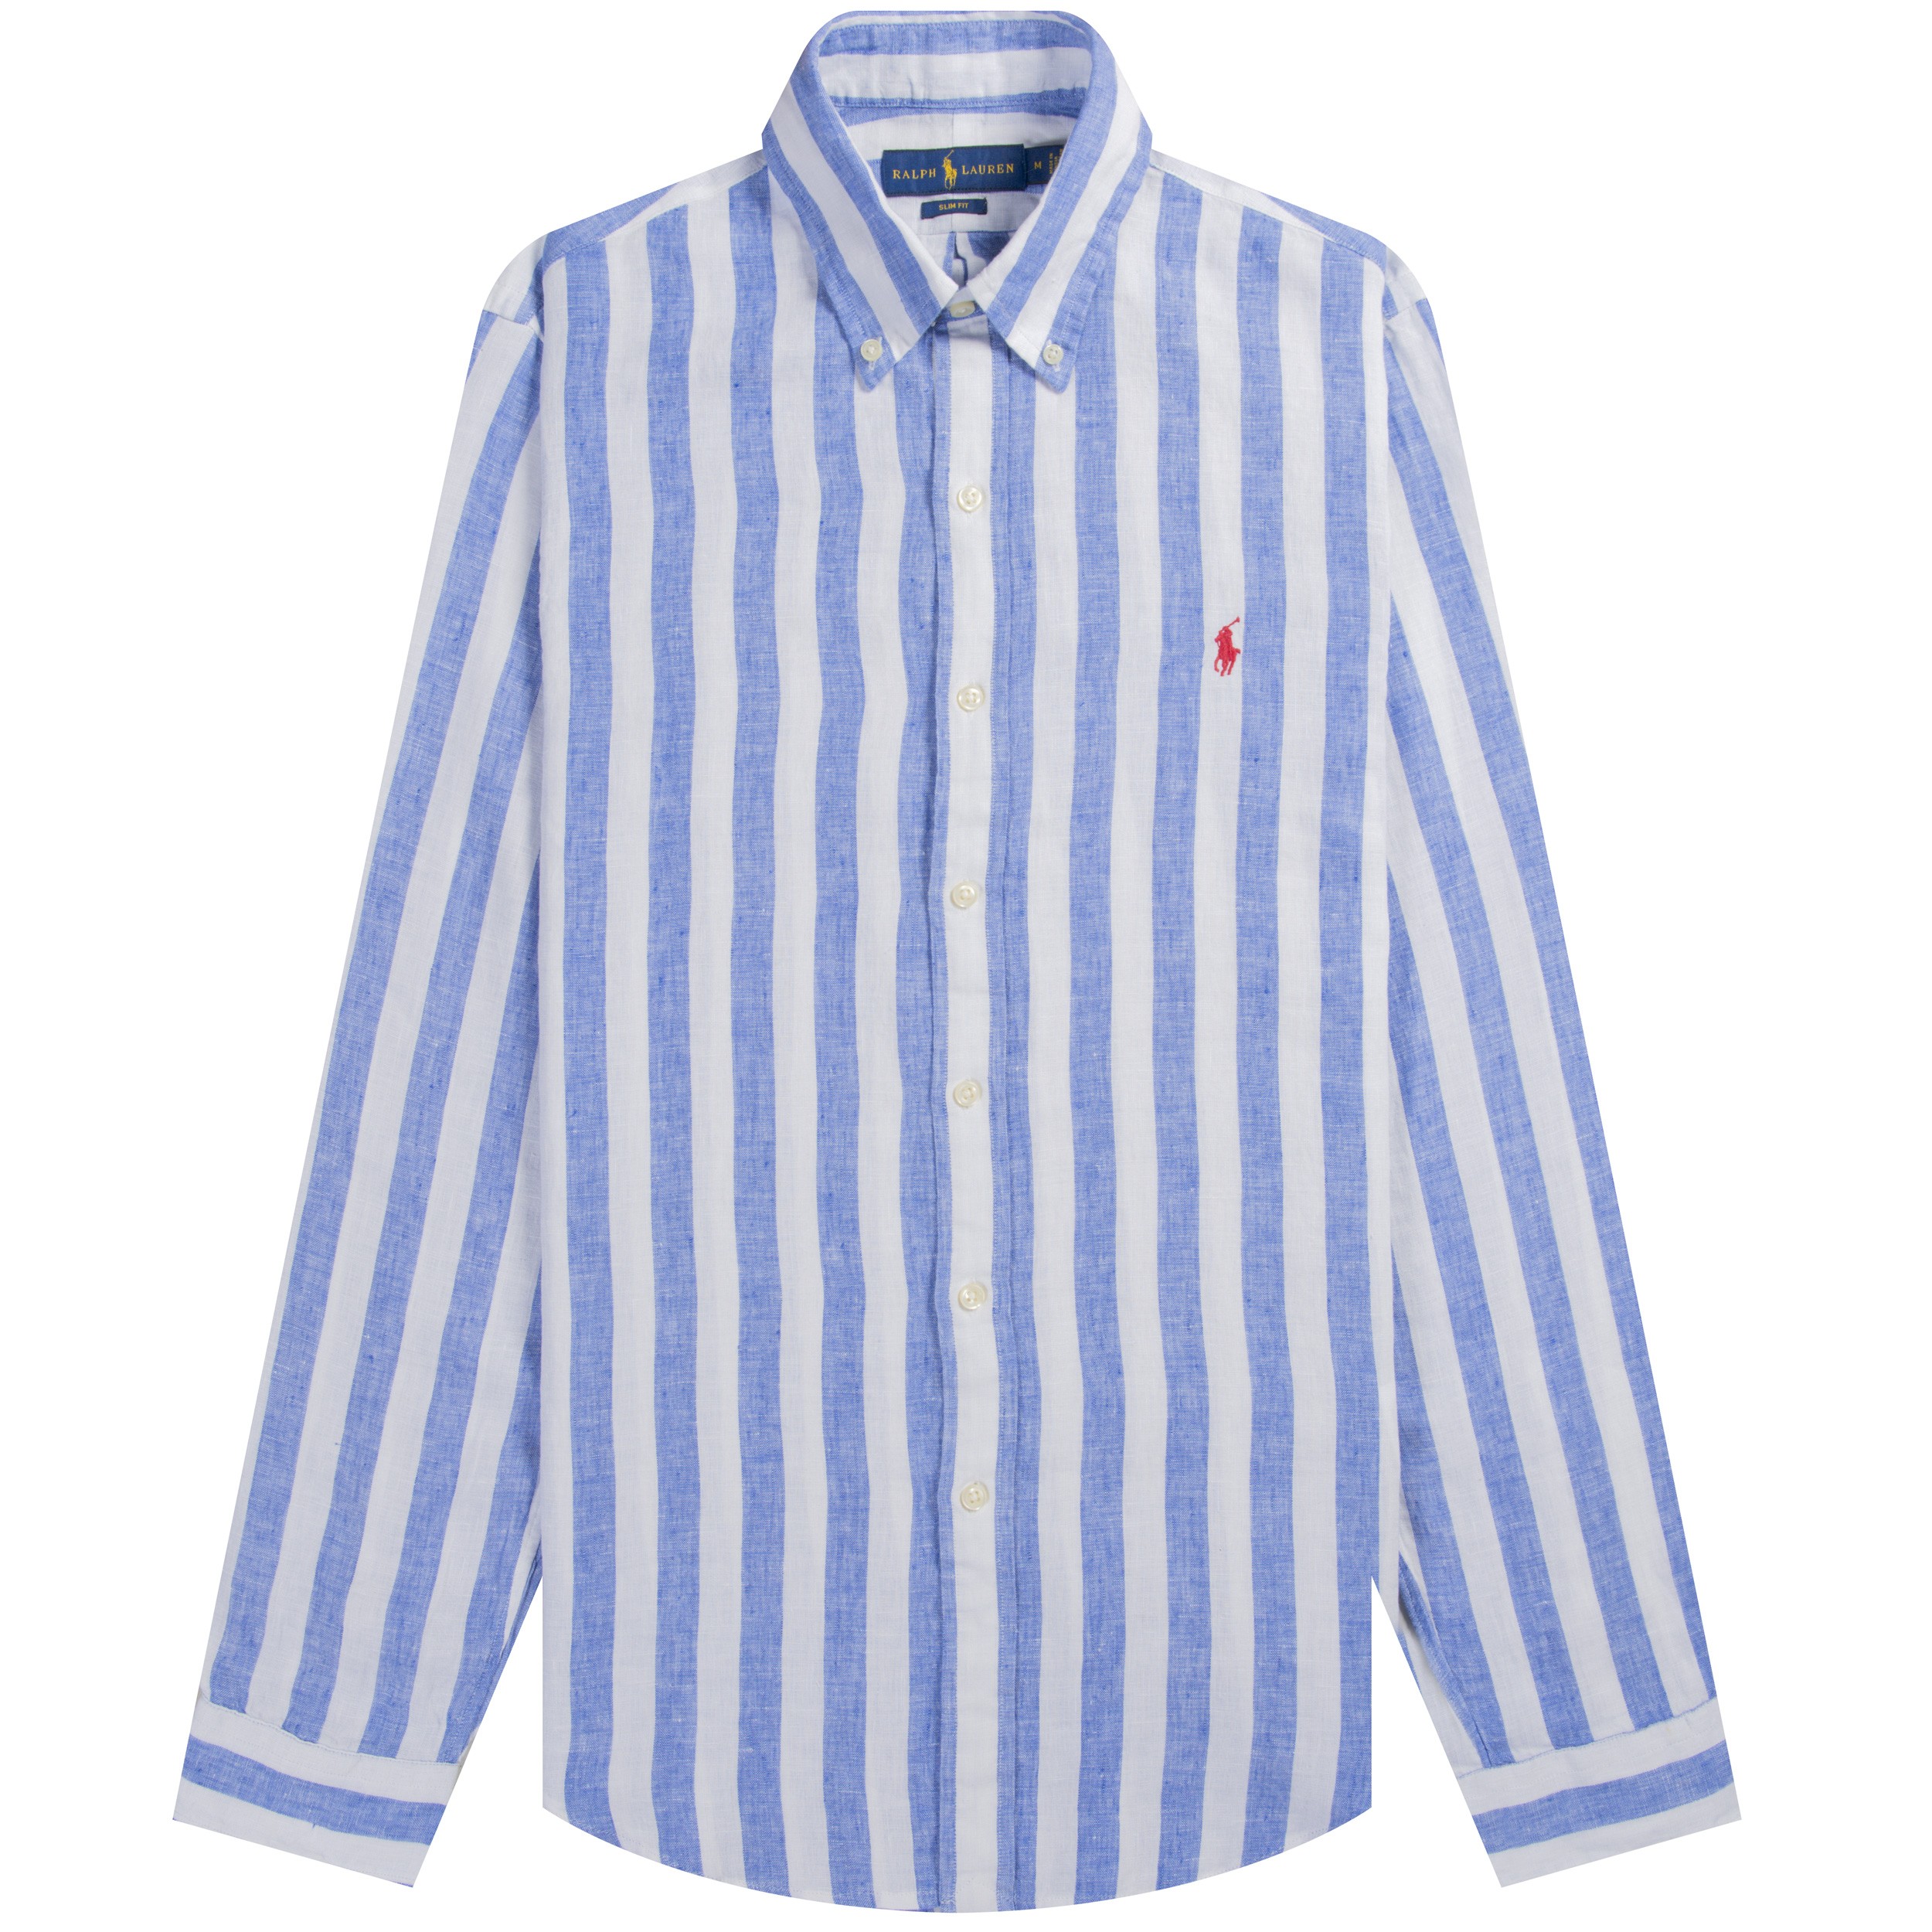 Polo Ralph Lauren Ralph Lauren Slim Fit Striped Linen Shirt Blue/White